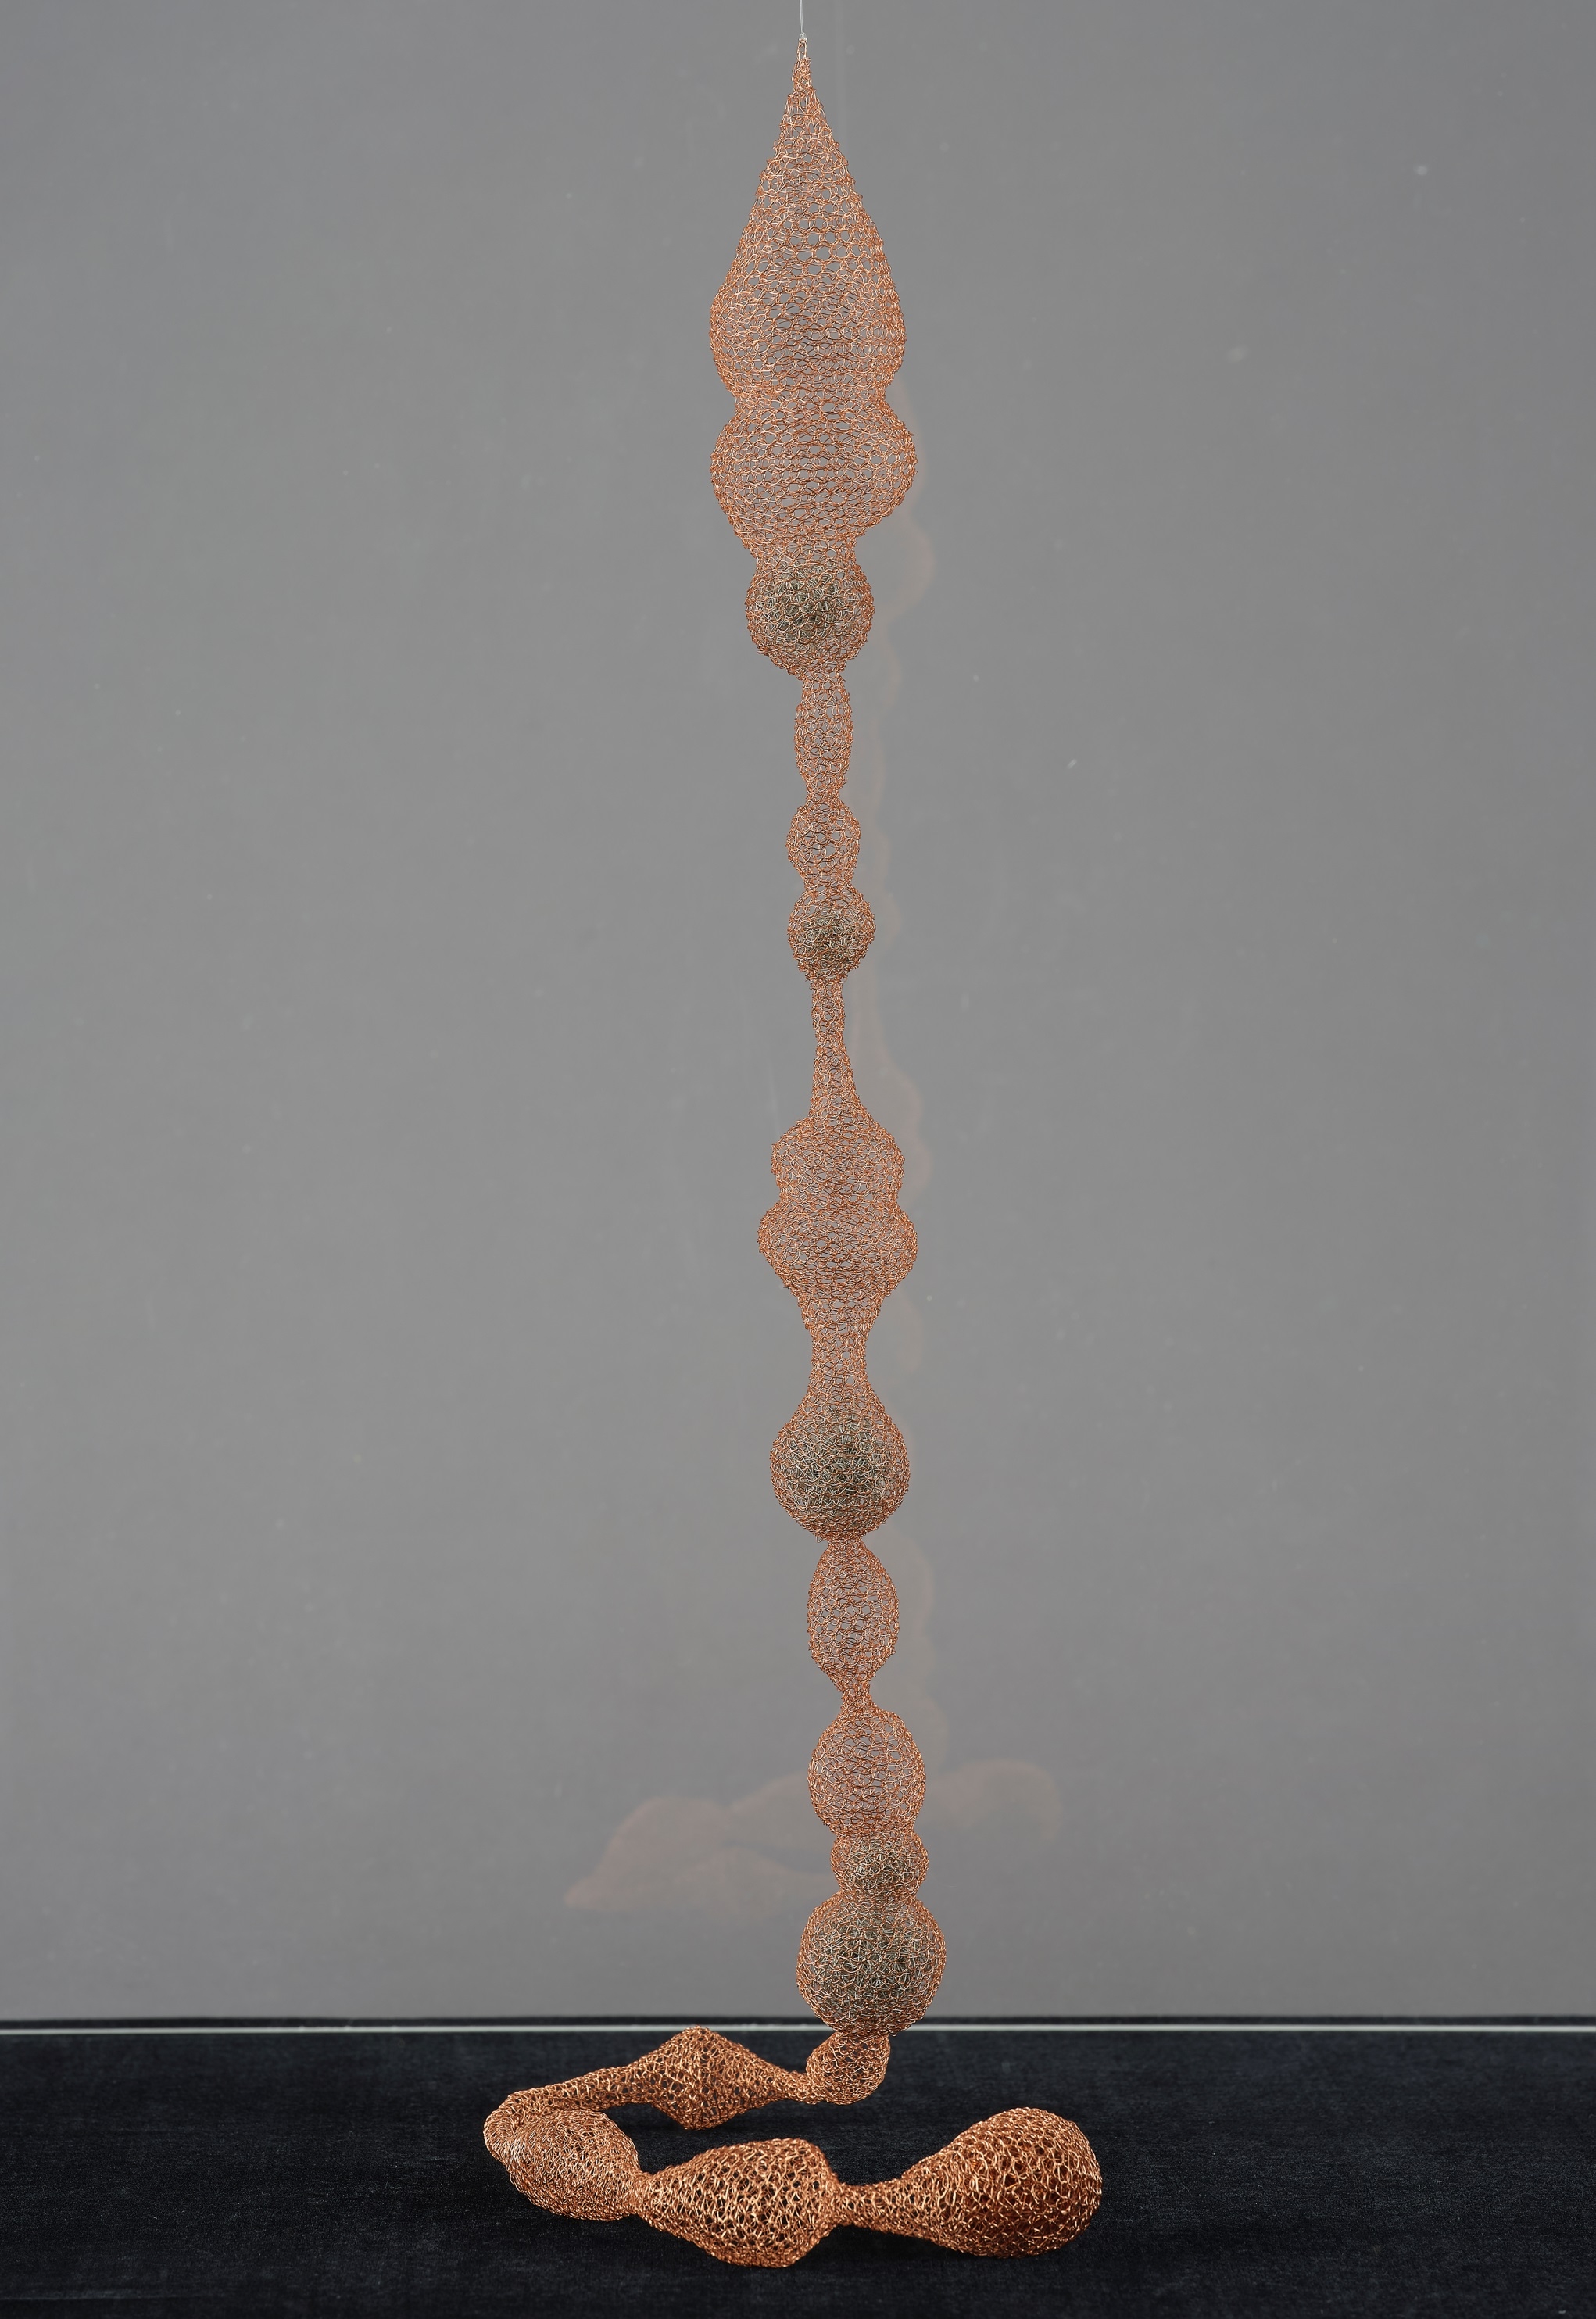 這件作品〈串〉，以金銅色絲線細密的編織出長條的網子，頂端懸吊的垂墜水滴形狀，擬造金屬網子柔軟的樣態。